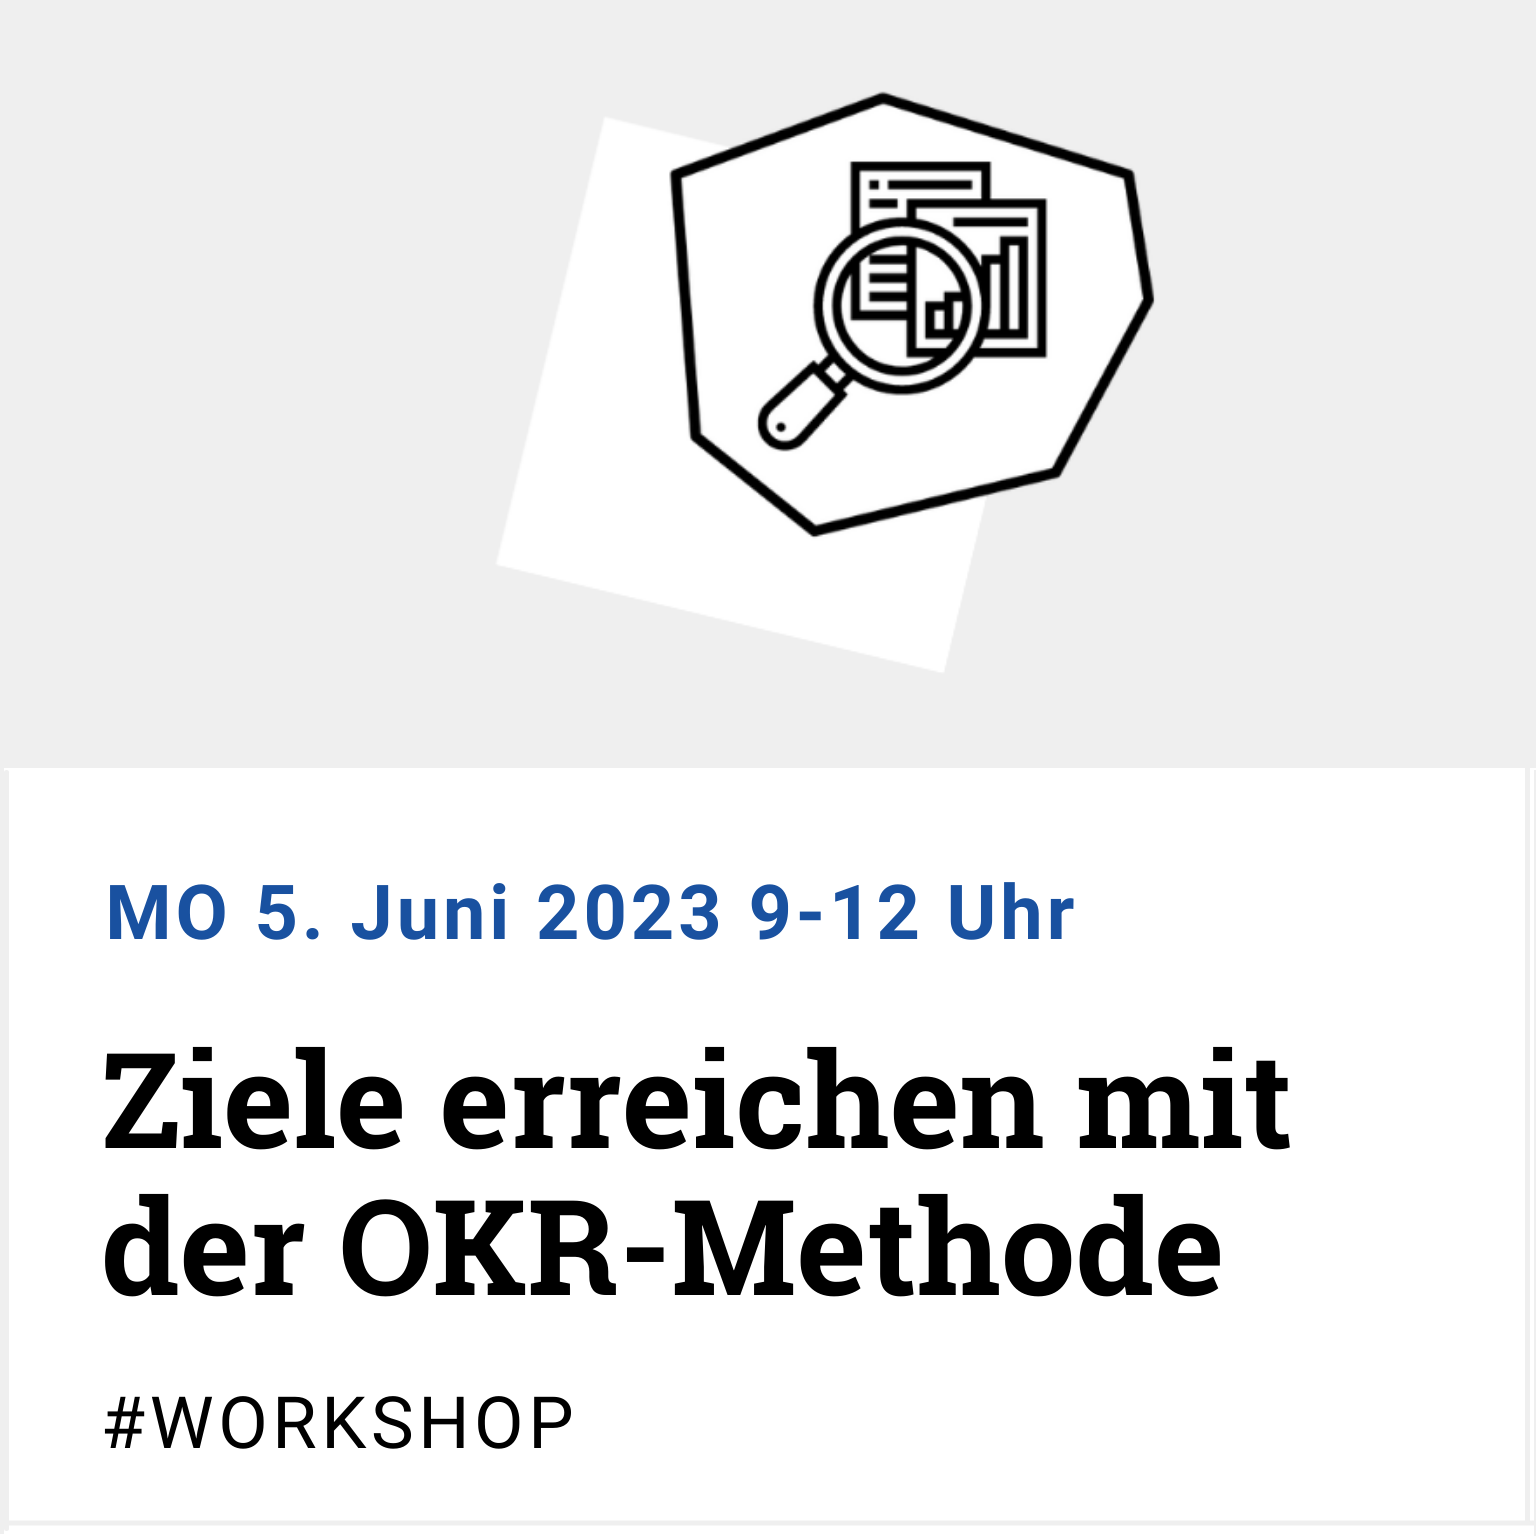 Workshop: Ziele erreichen mit der OKR-Methode am MO 5.6.23 9 bis 12 Uhr